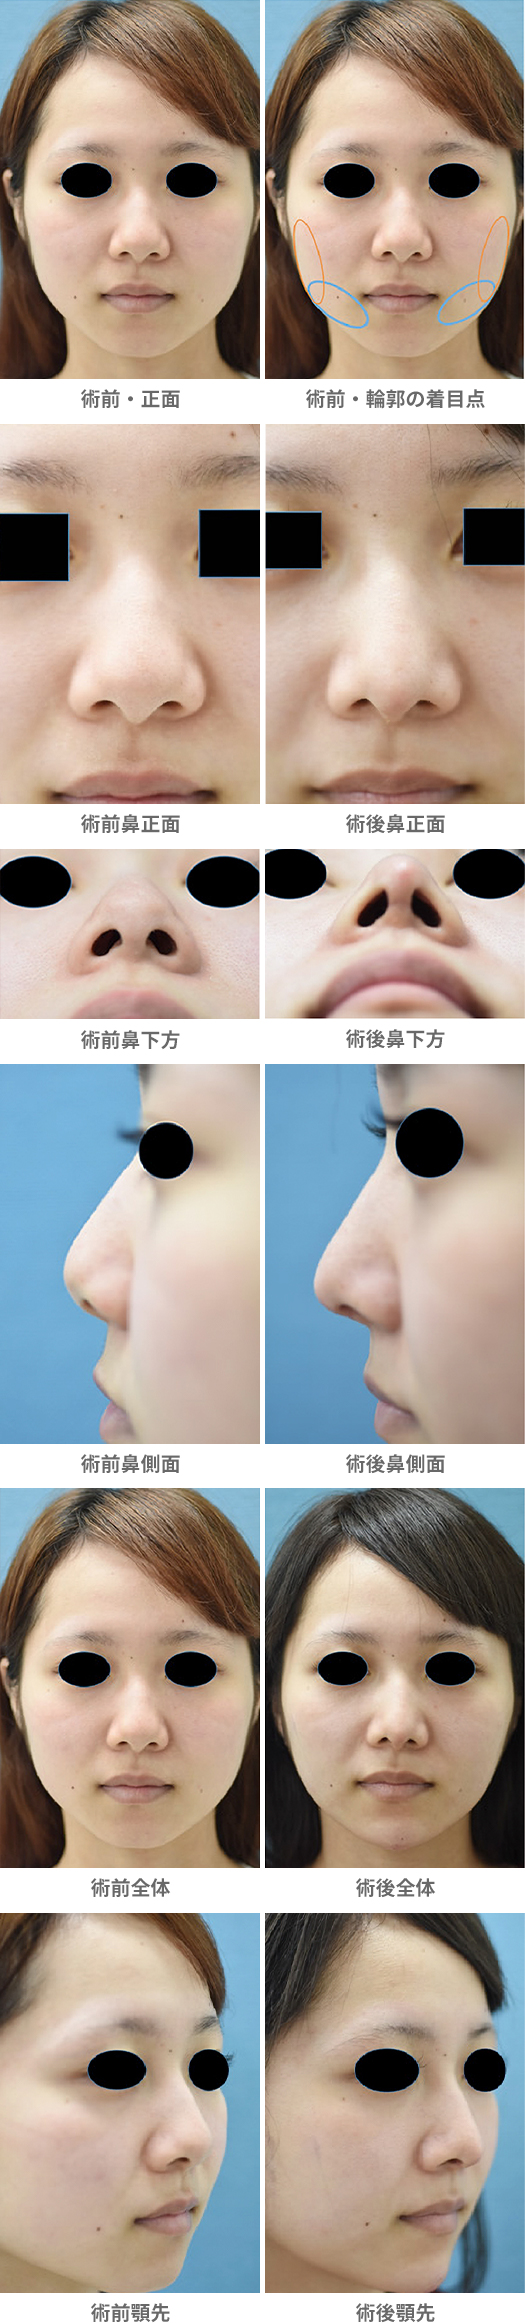 「複合技による小顔整形・シャープな雰囲気に変える」の症例写真・ビフォーアフター